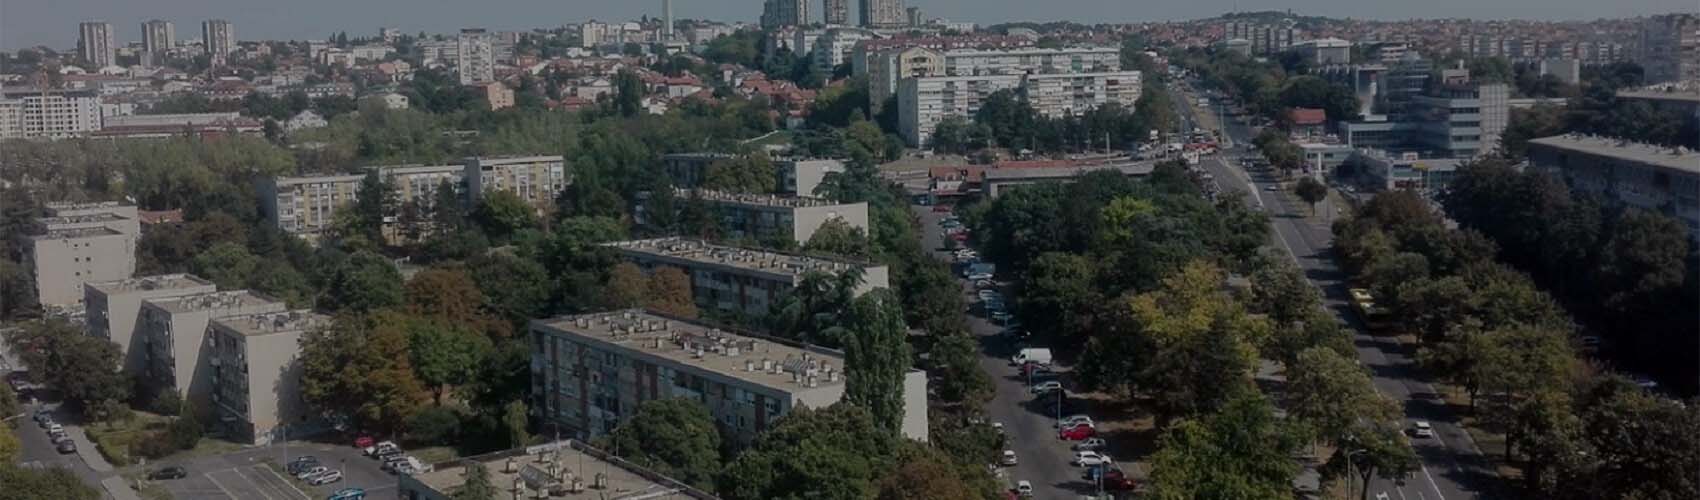 Kasko osiguranje Beograd | Šumice